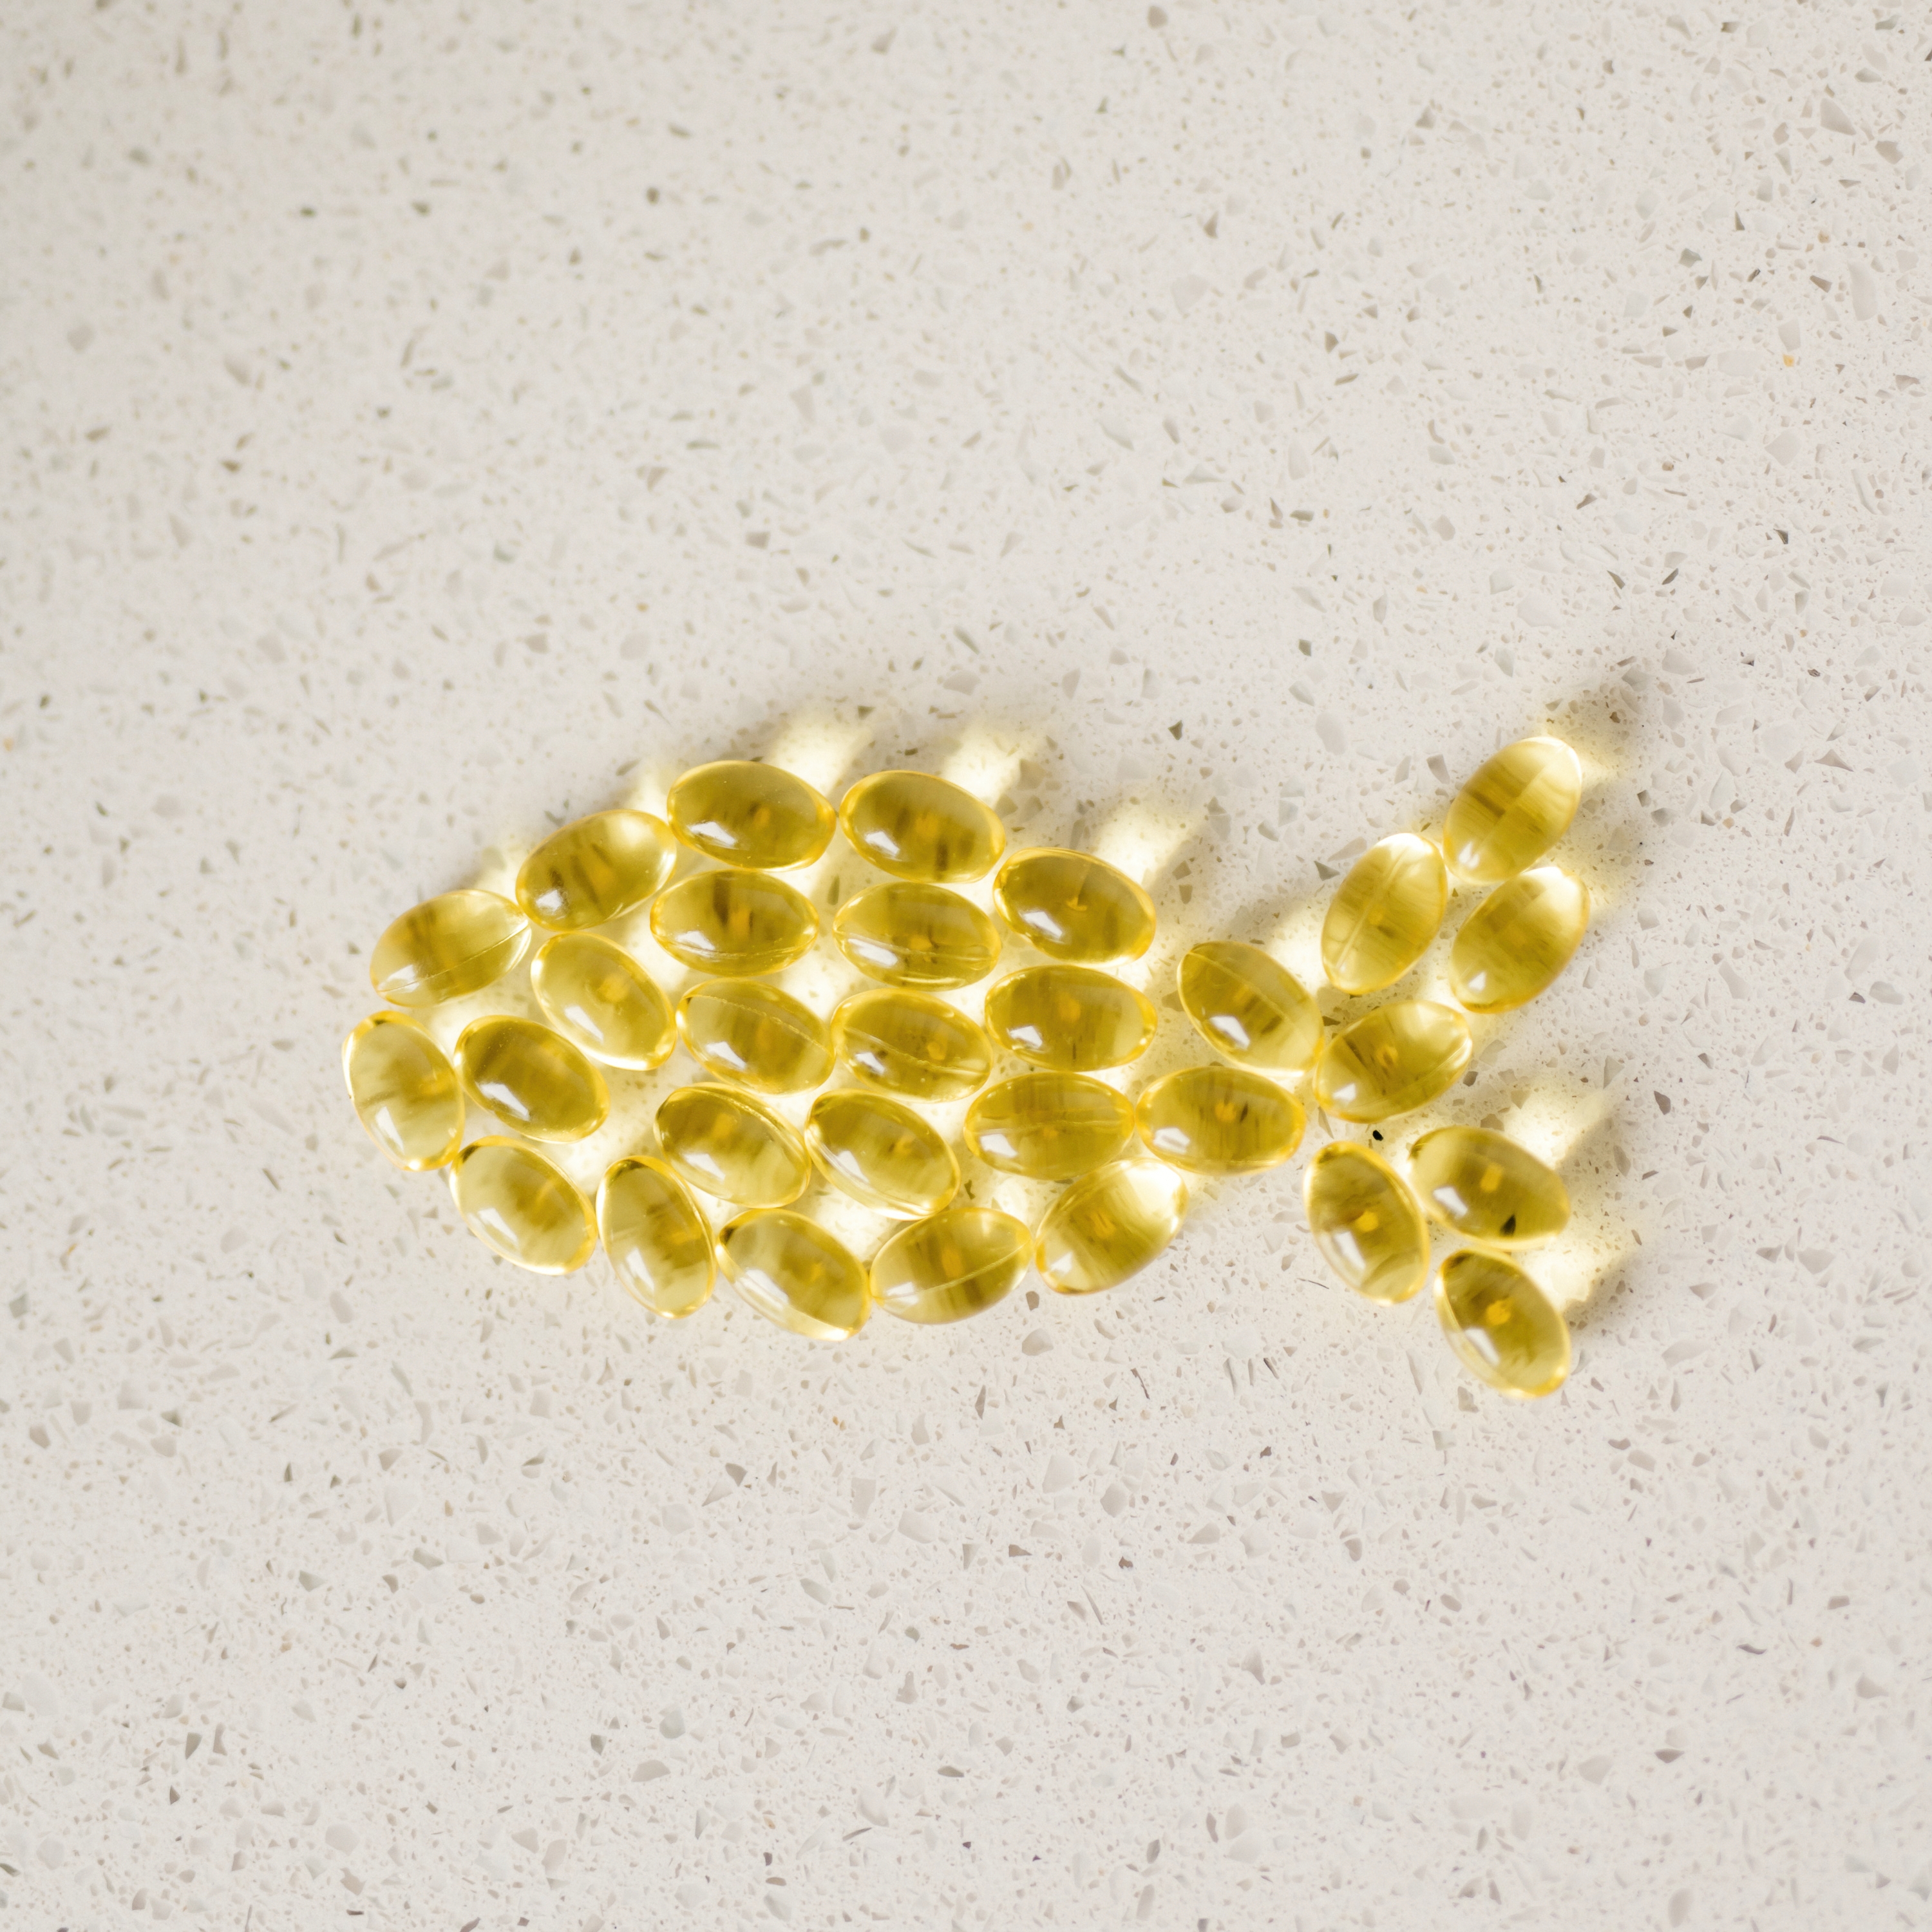 Ali ste vedeli, da ljudje, ki zaužijejo dovolj omega-3 živijo dlje?